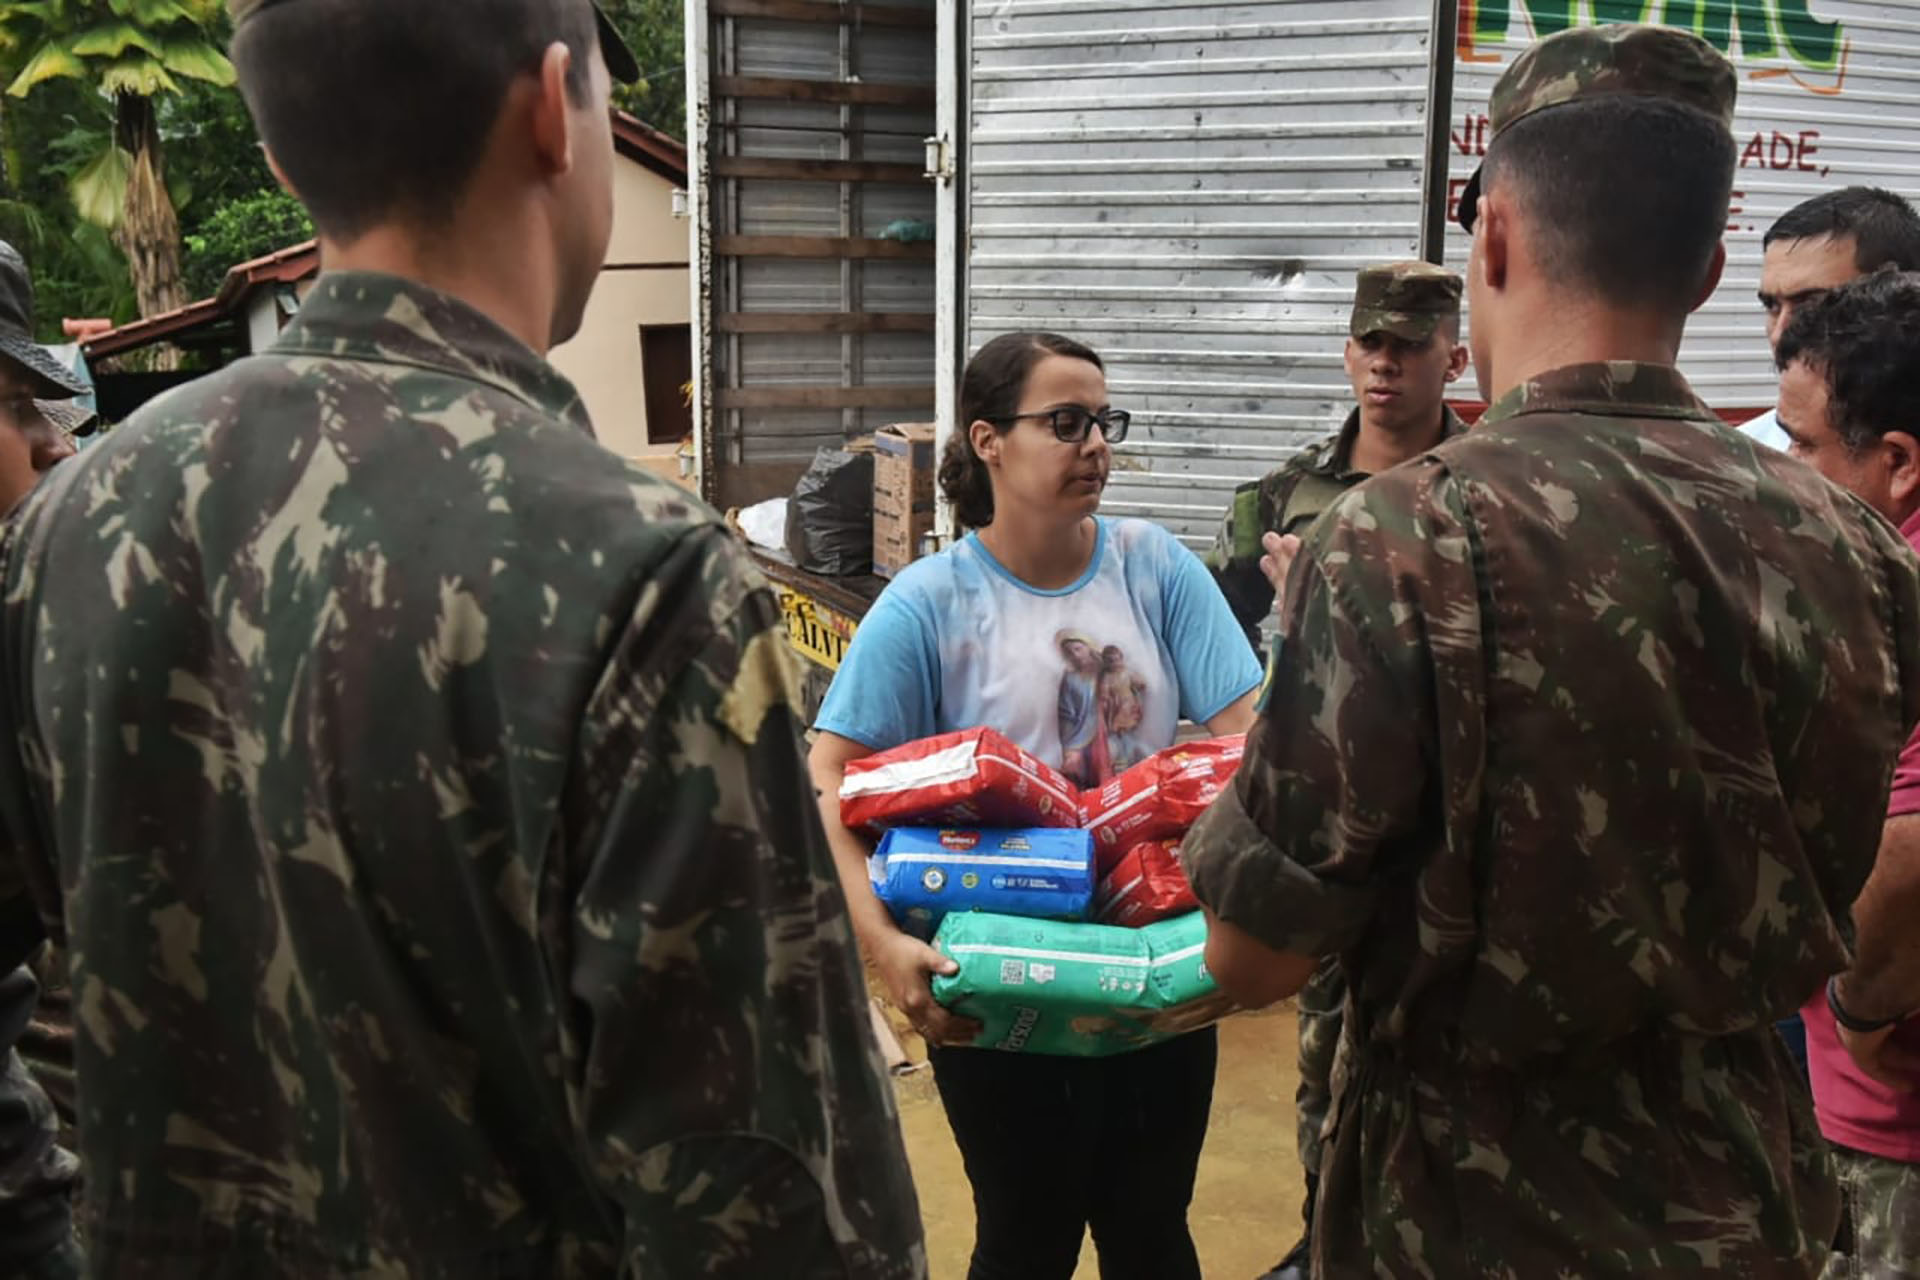 Iconha recebe ajuda do Exército